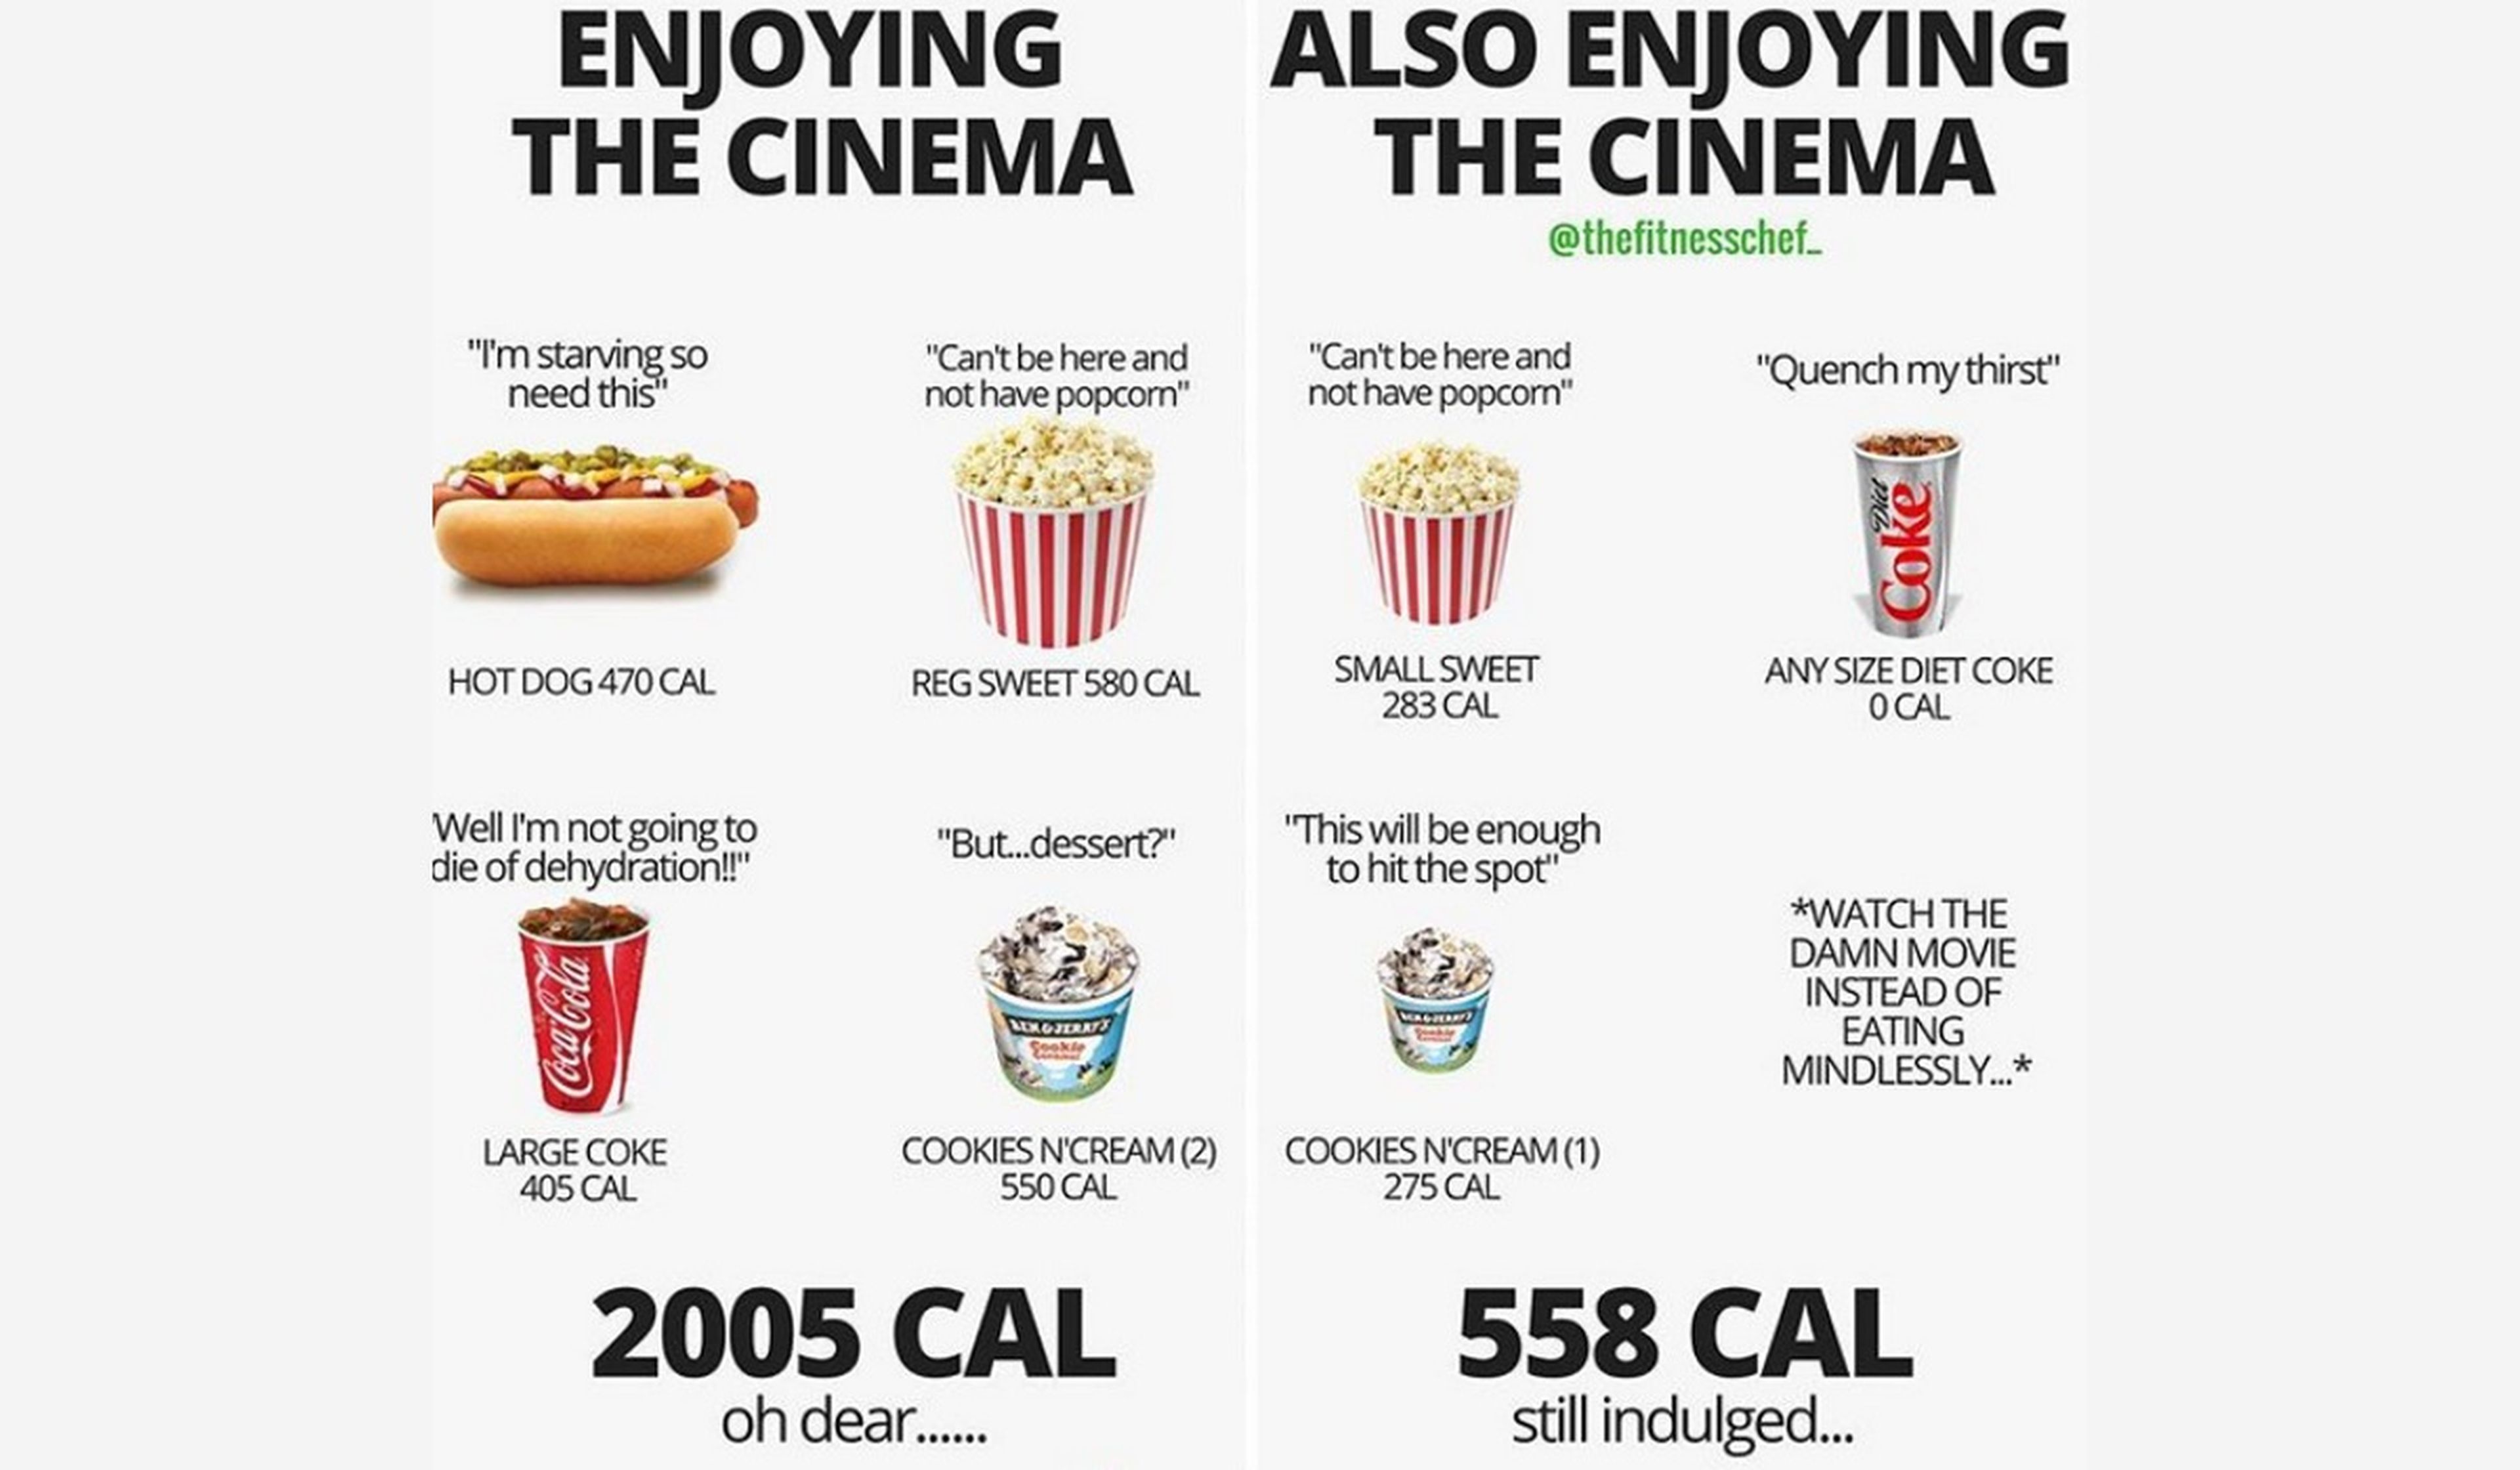 Verdades y mentiras de las calorías